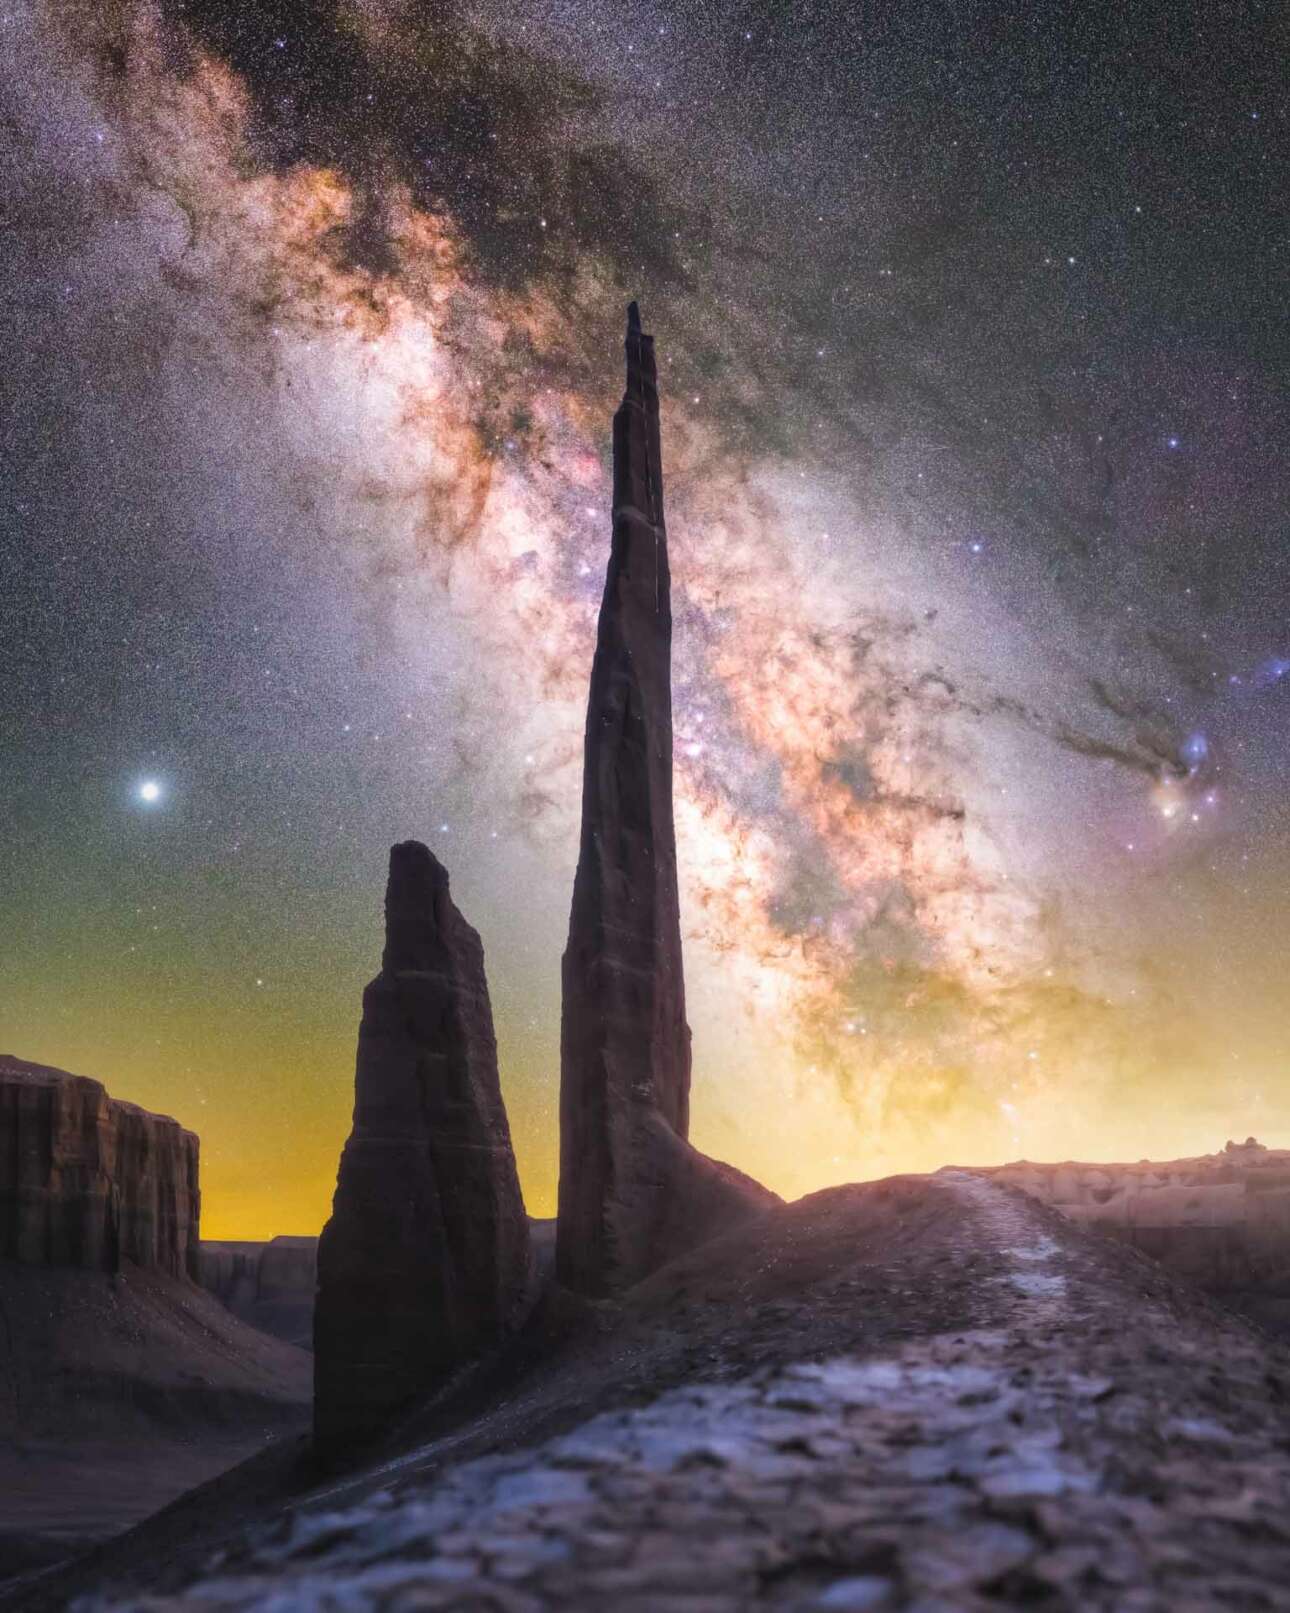 Μια ακόμη φωτογραφία όπου το σκηνικό της ερήμου εντυπωσιάζει περισσότερο από την εικόνα του ουράνιου θόλου και του γαλαξία. Πρόκειται για την περιοχή Hanksville Badlands στην έρημο της Γιούτα, στις ΗΠΑ